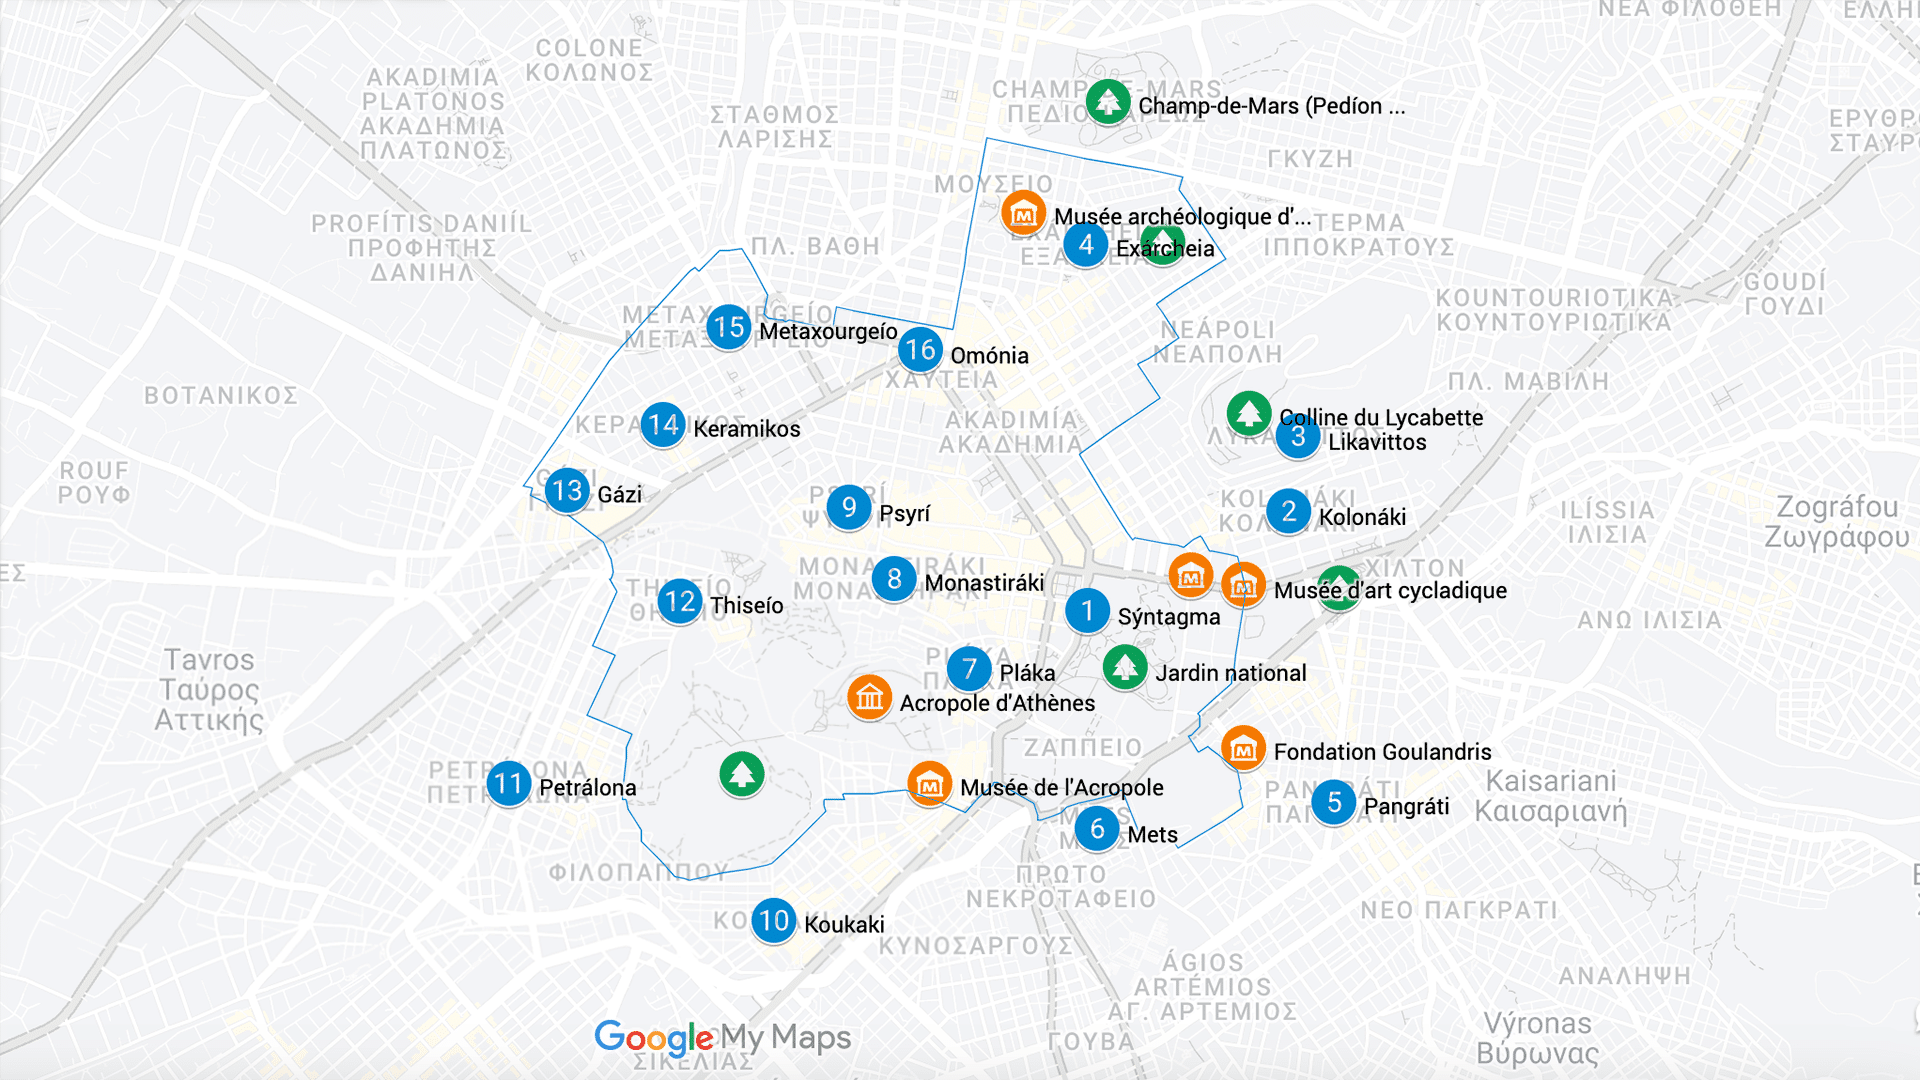 Plan des quartiers, des musées et des parcs d'Athènes